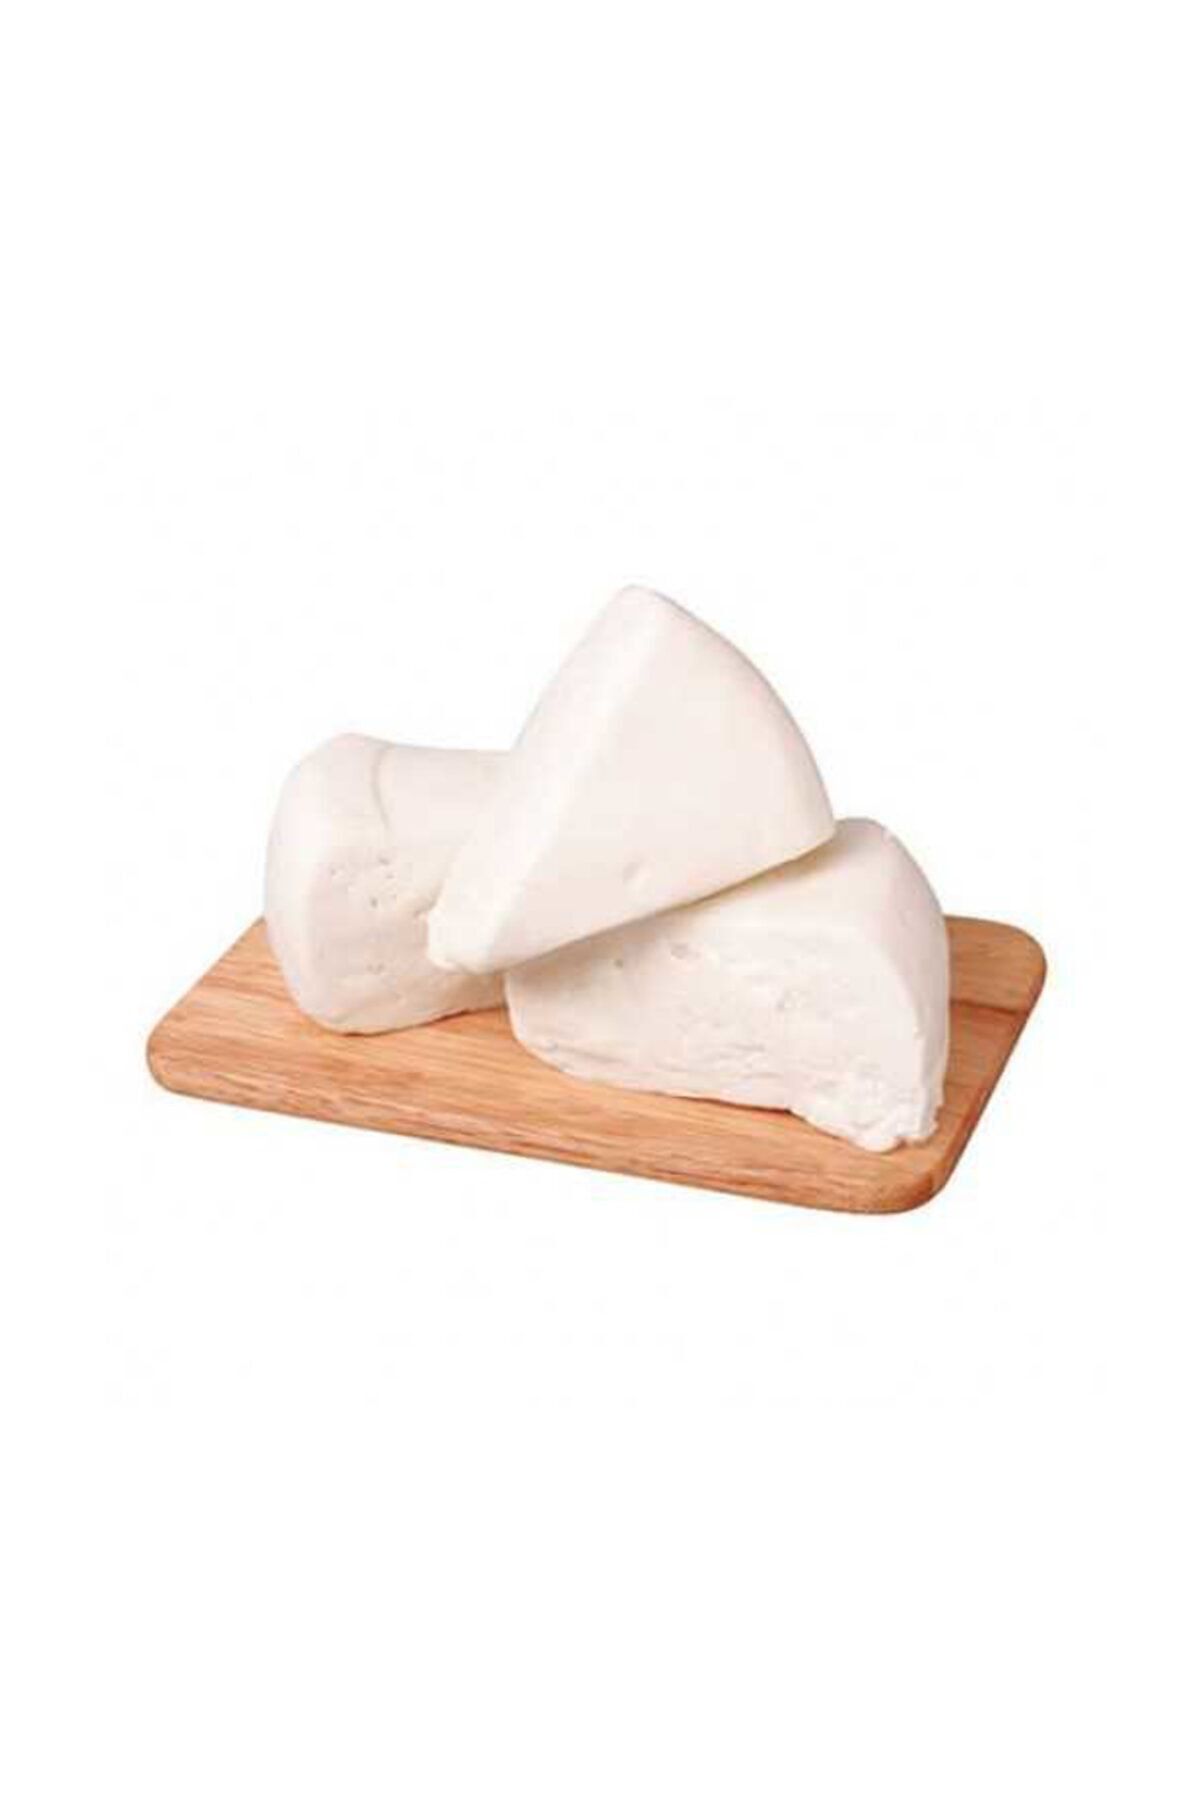 Genel Markalar Köy Peyniri 500 gr